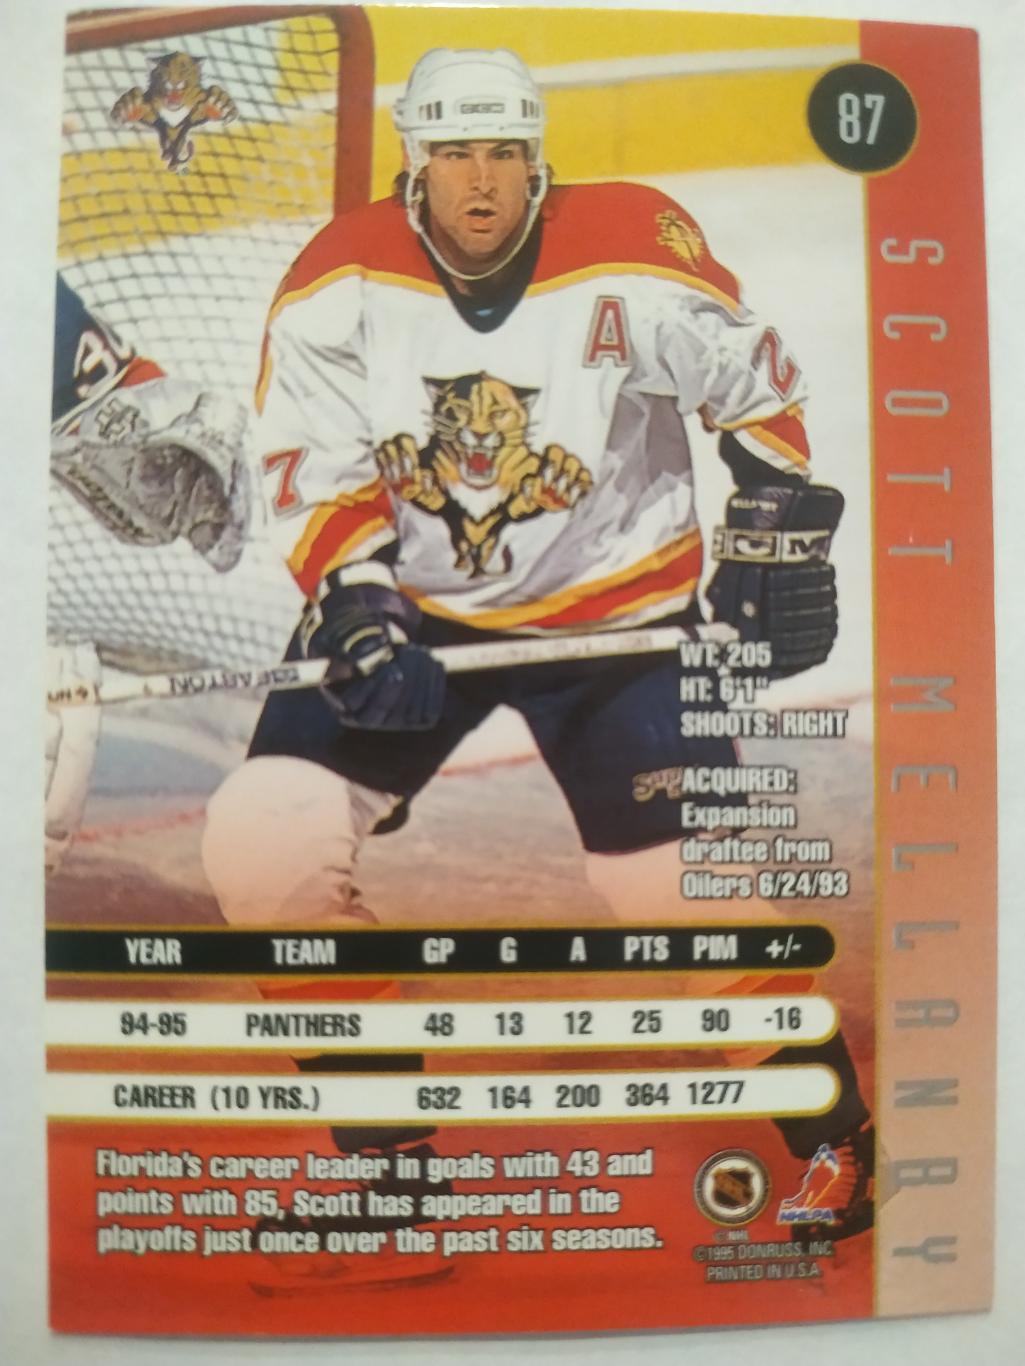 ХОККЕЙ КАРТОЧКА НХЛ DONRUSS LEAF 1995-96 SCOTT MELLANBY FLORIDA PANTHERS #87 1